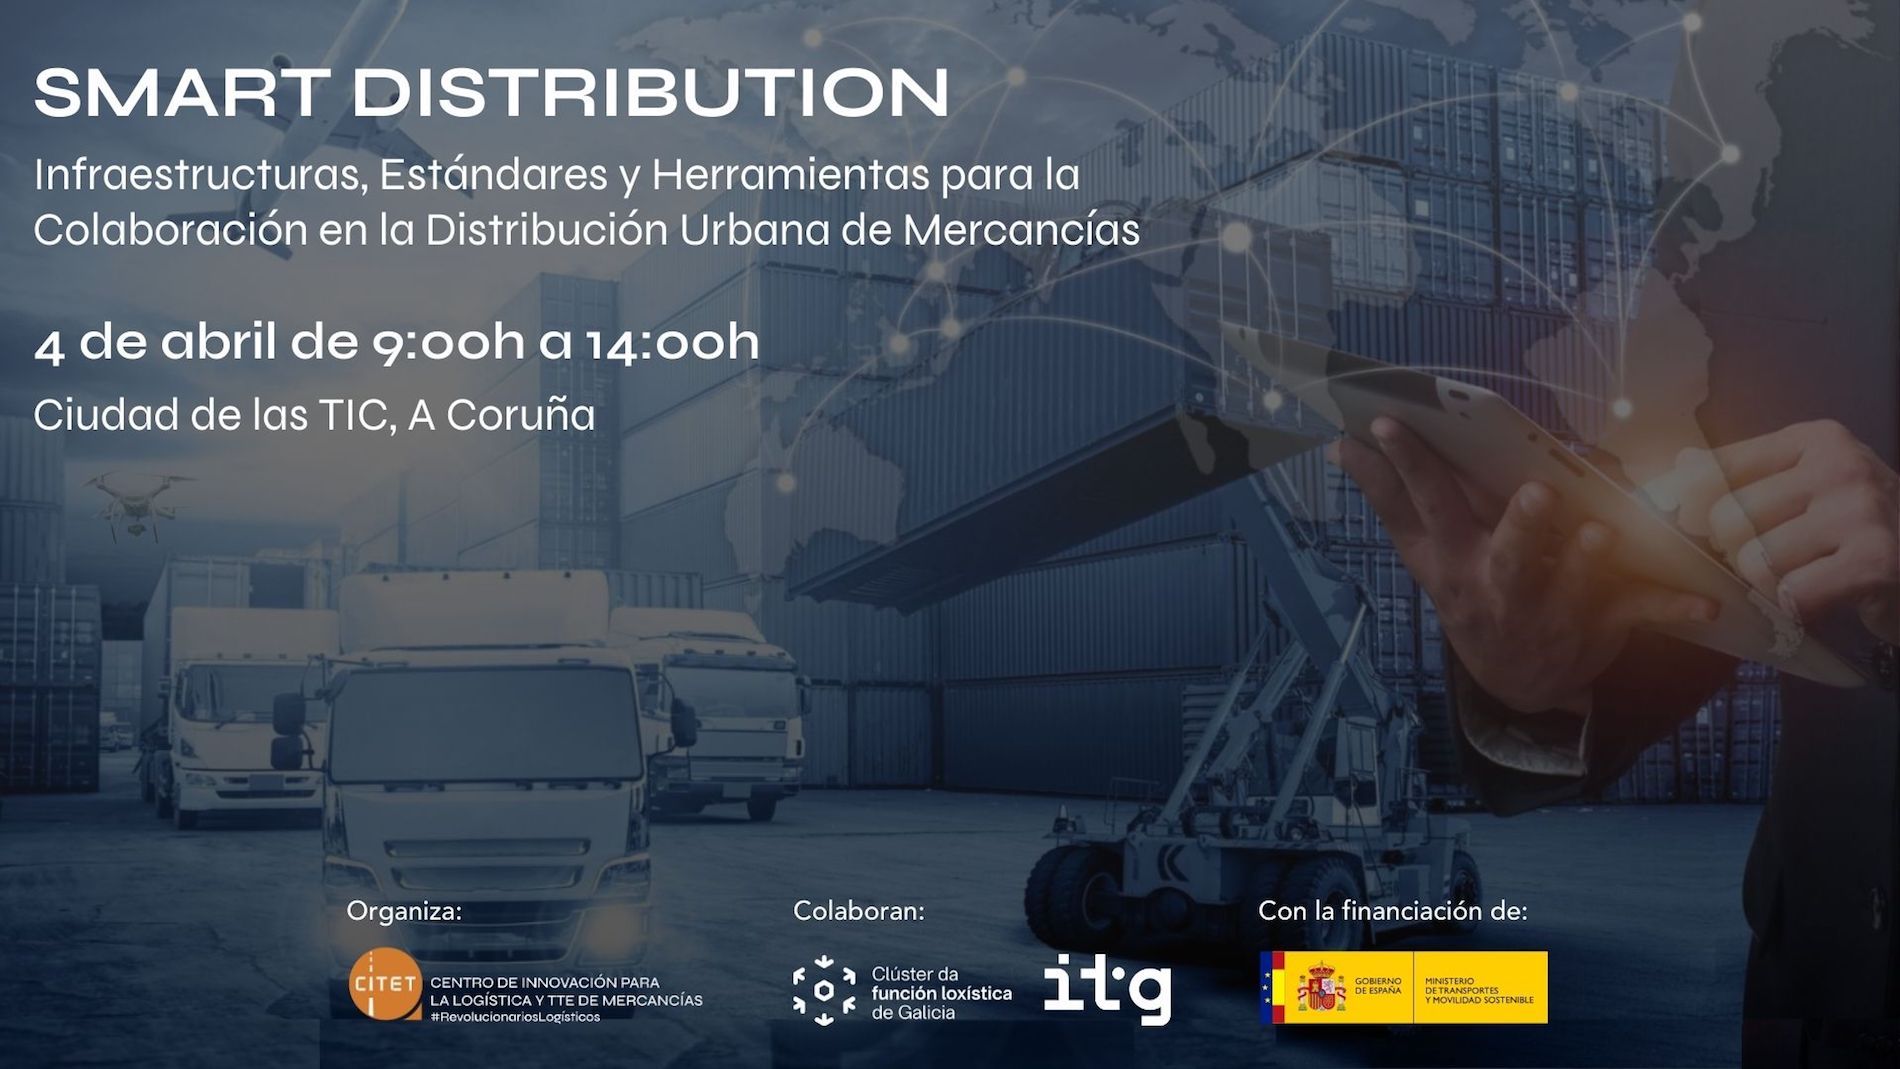 Ramón García, director general de Citet, explicará la actualidad, retos y desafíos para la colaboración en la Distribución Urbana de Mercancías.